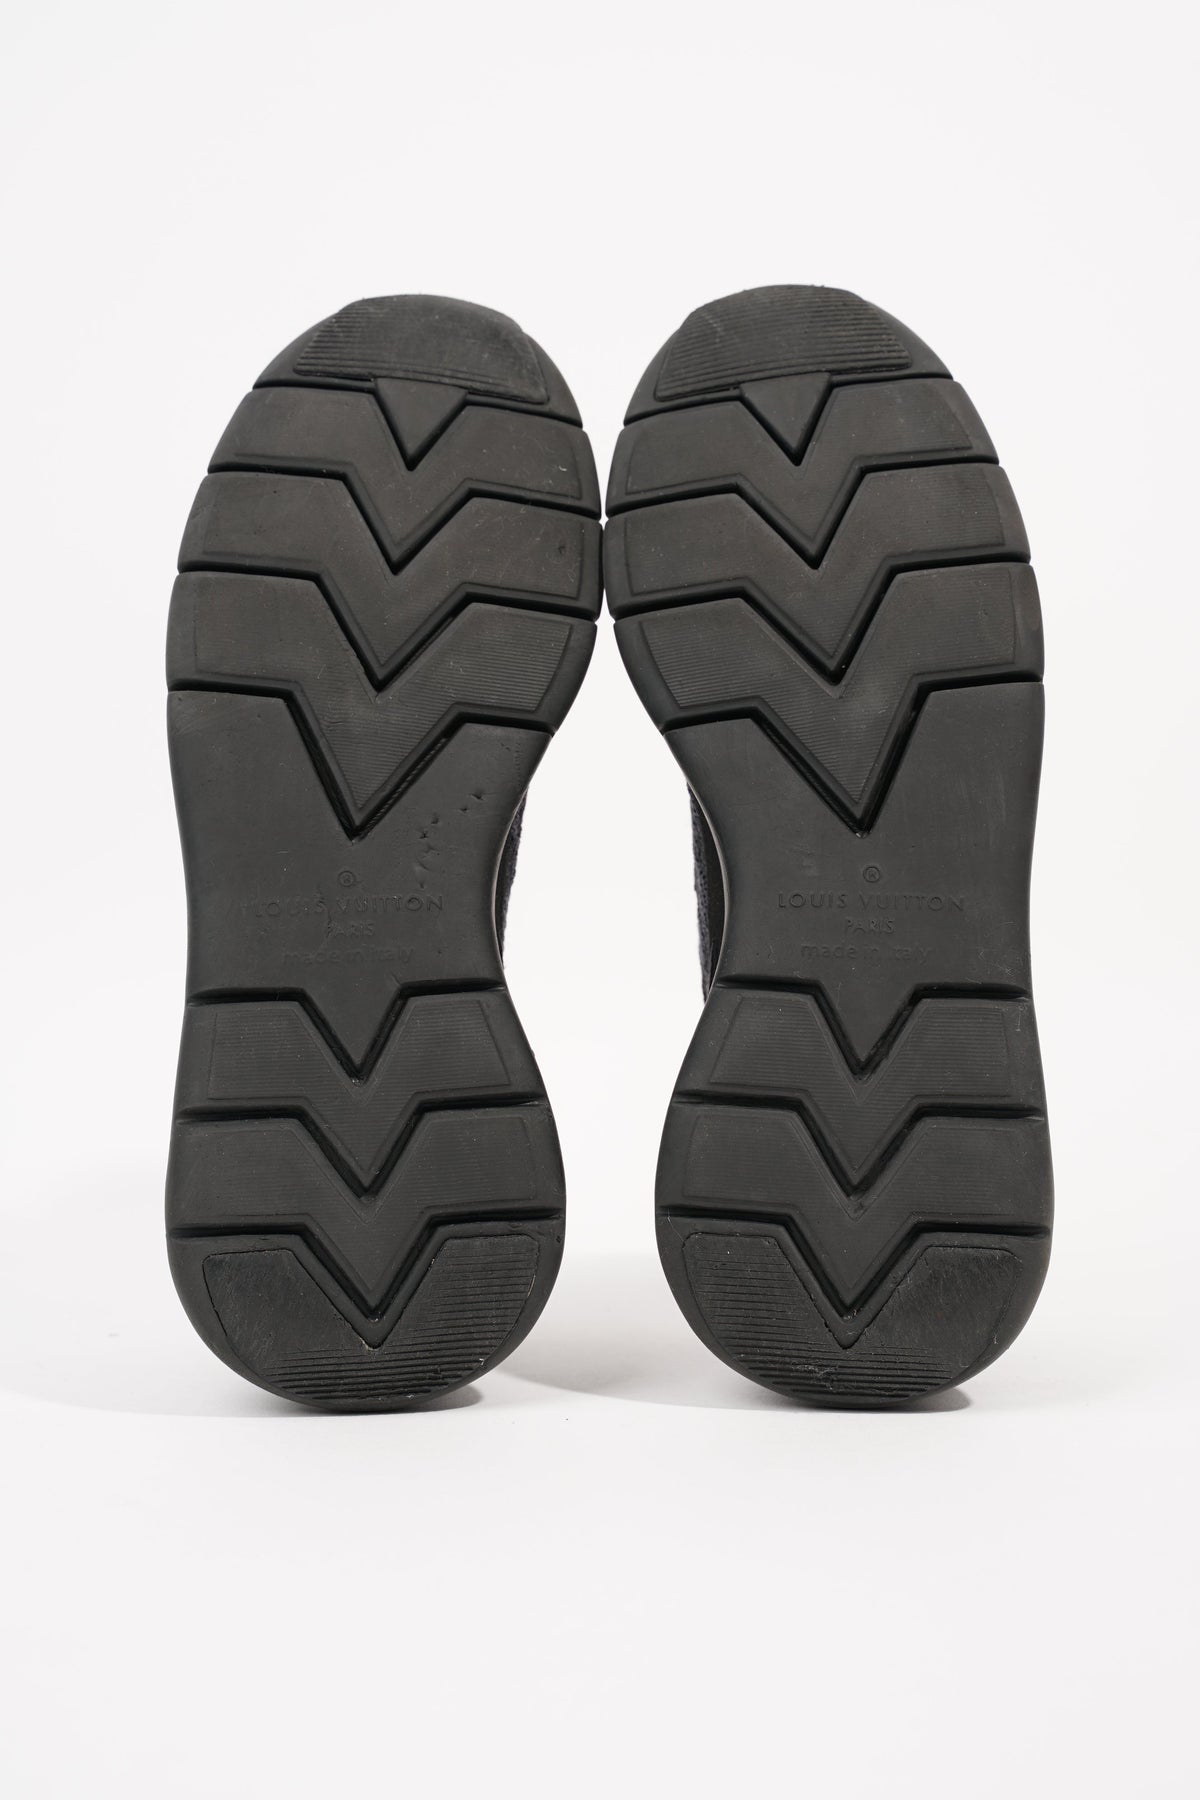 Louis Vuitton Mens Fastlane Sneaker Black Grey EU 40.5 / UK 7.5 – Luxe  Collective